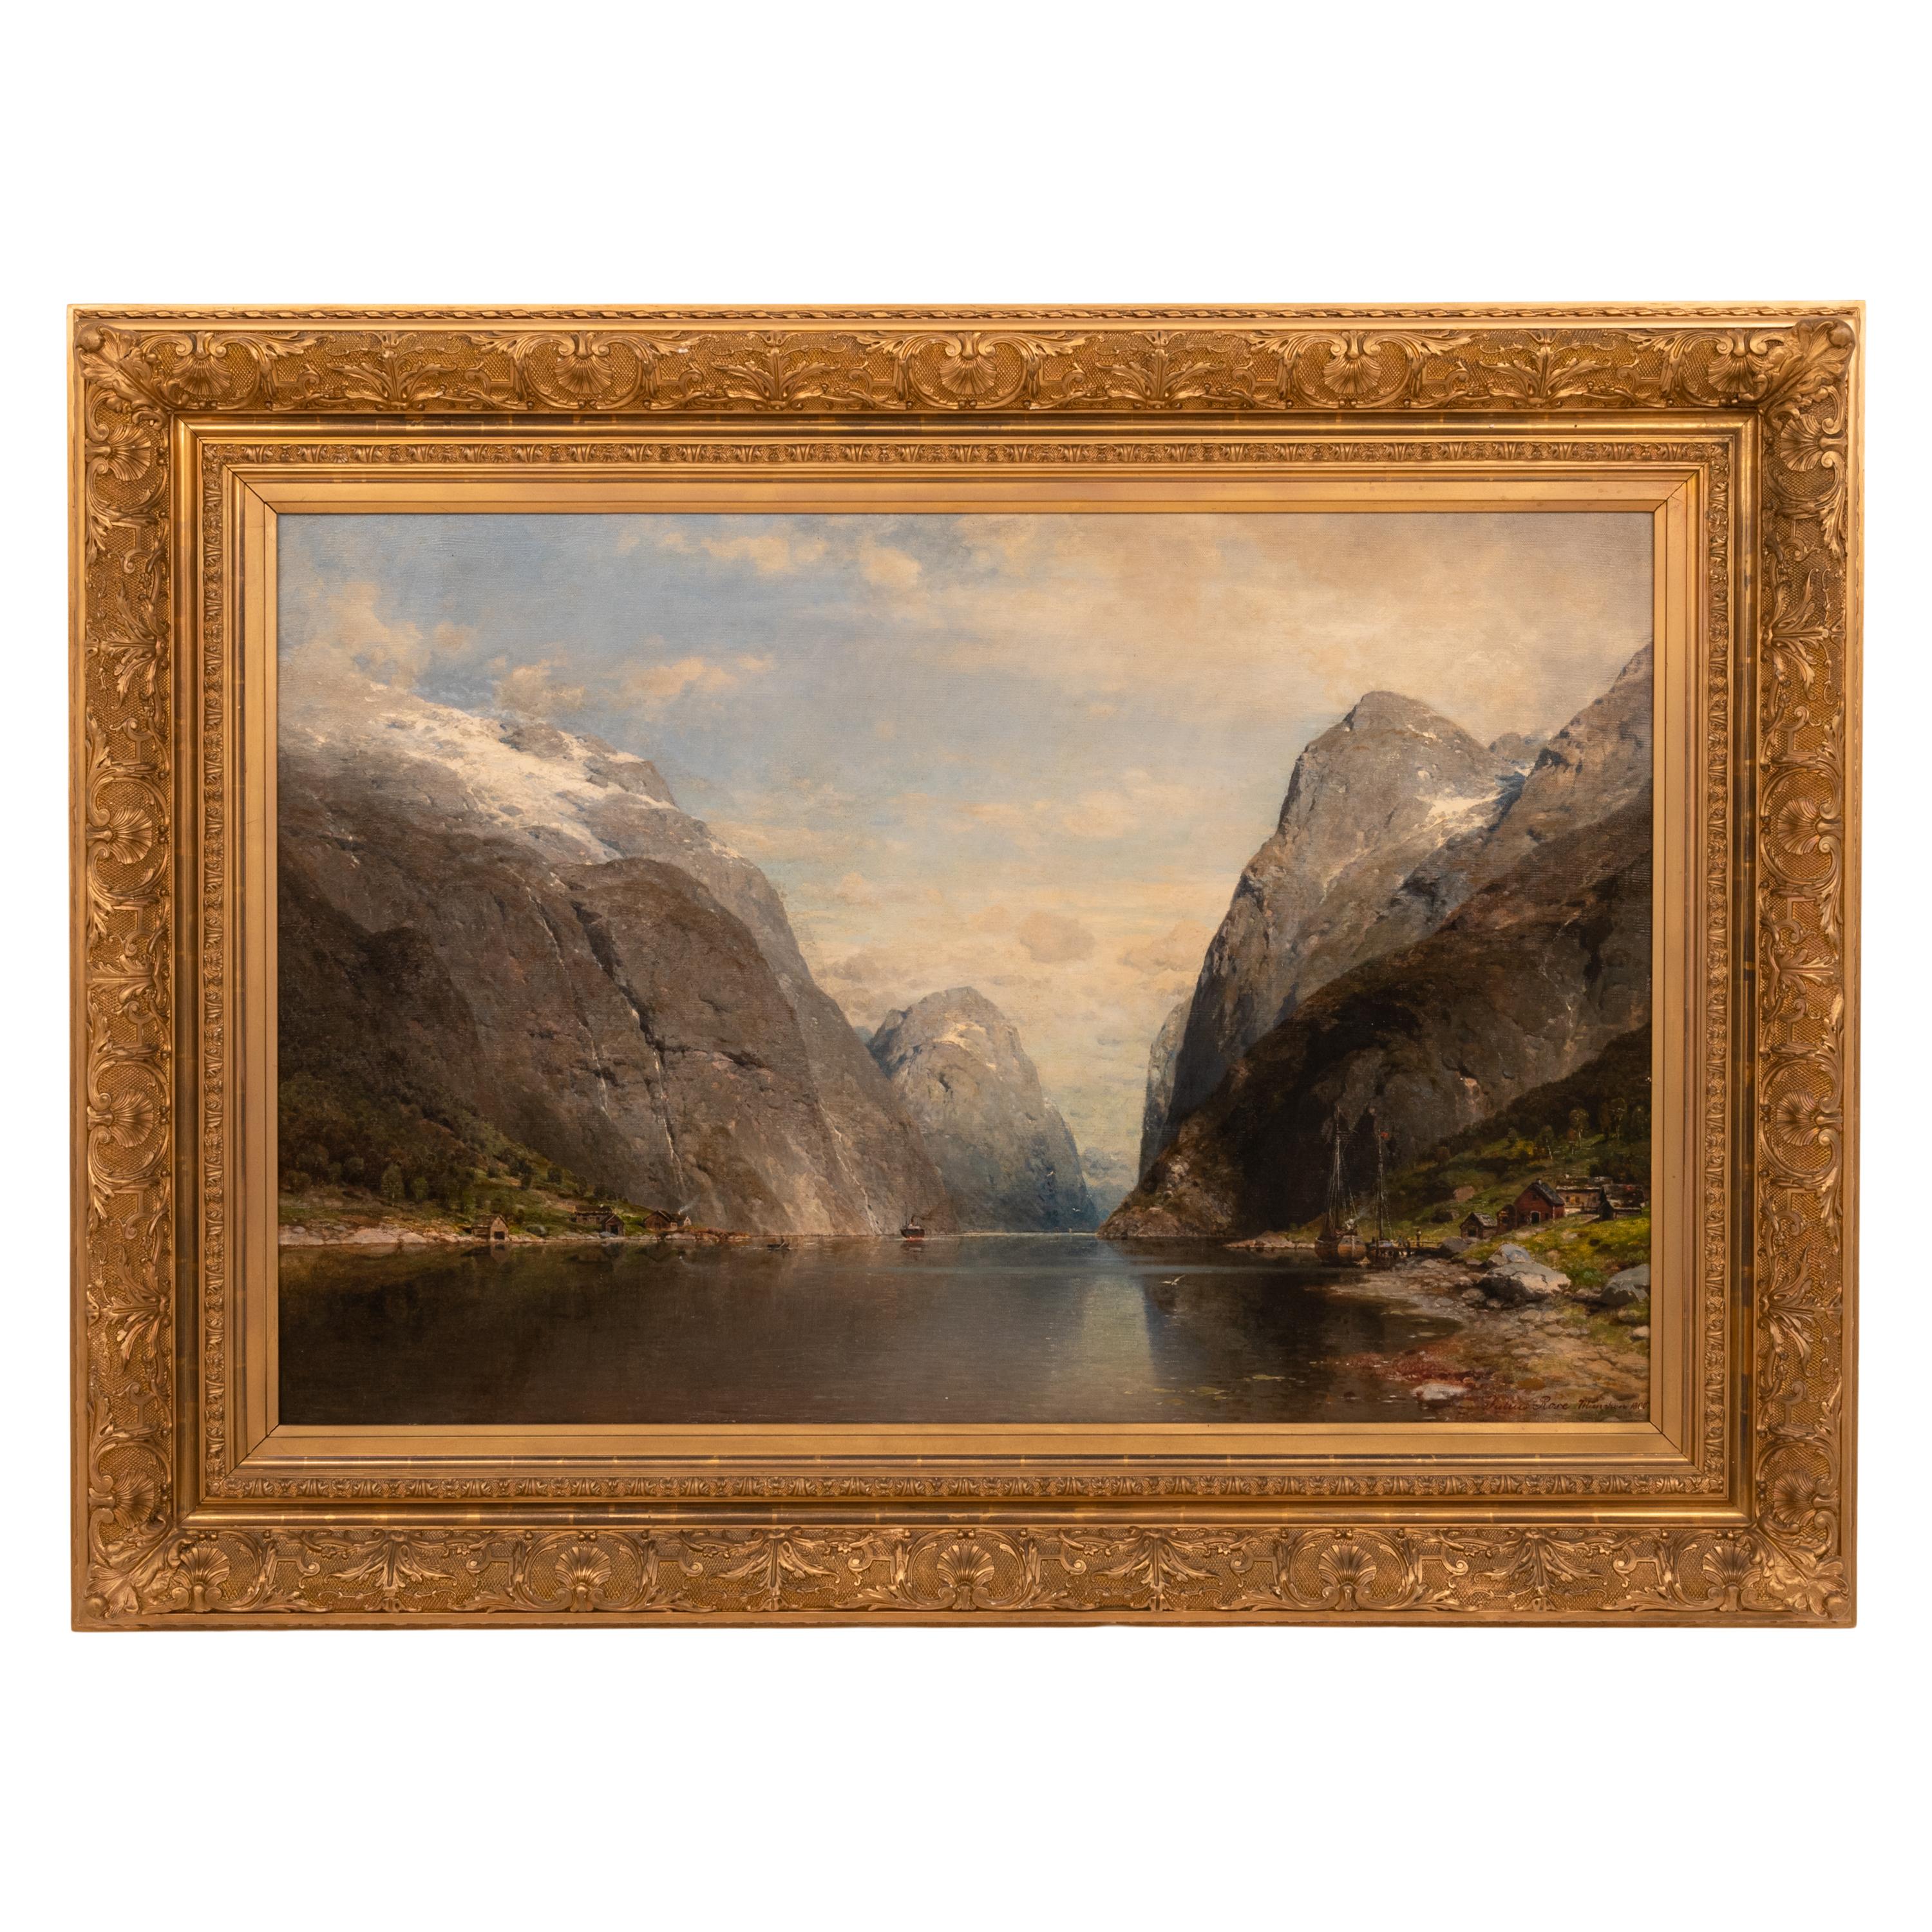 KARL JULIUS ROSE Landscape Painting - Large Antique German Oil on Canvas Norwegian Fjord Landscape Scene 1890